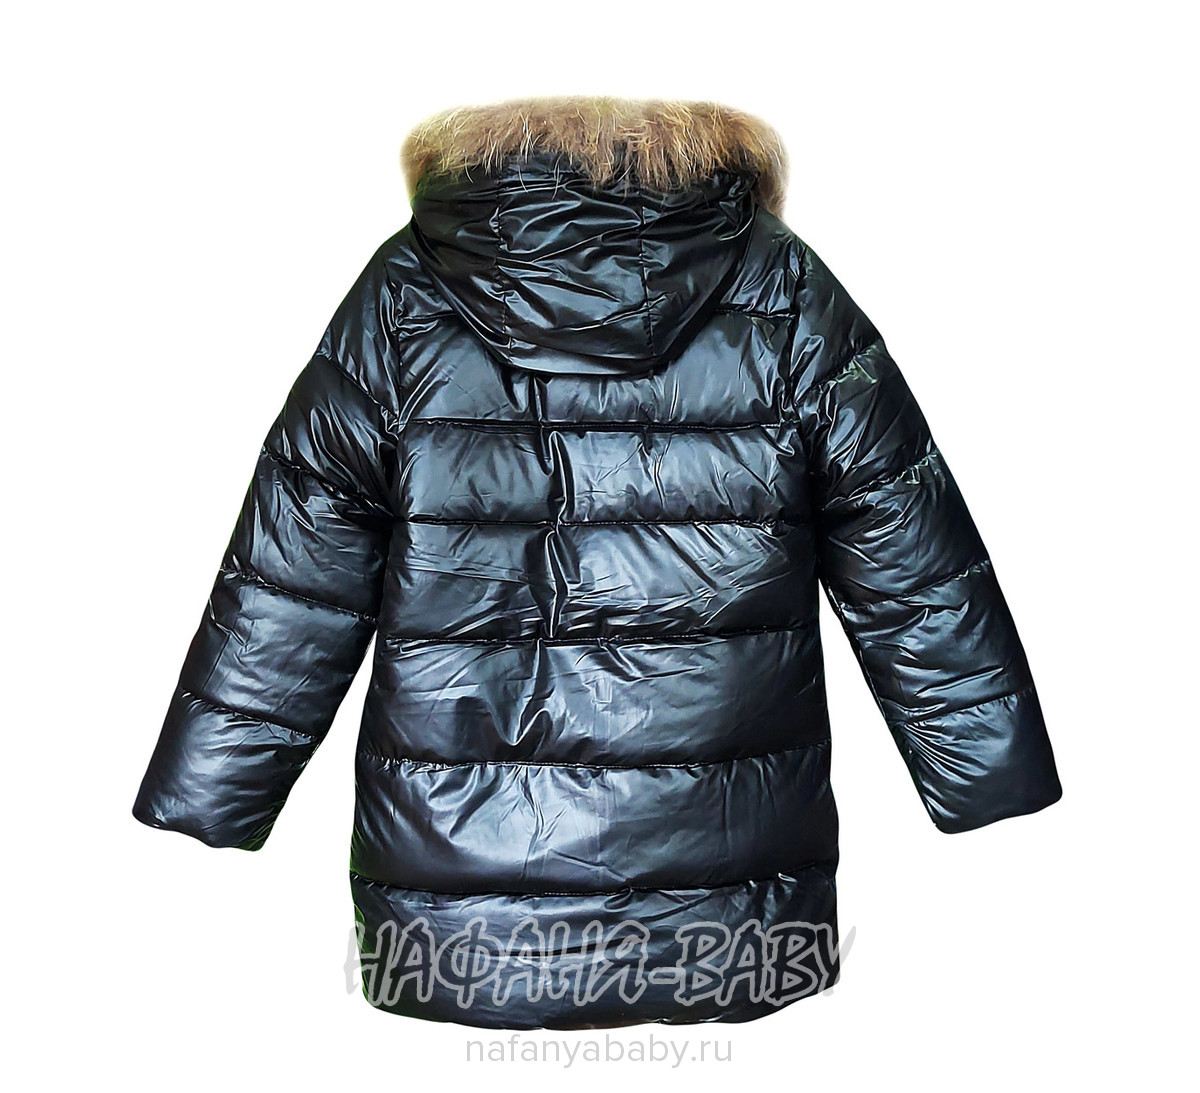 Зимняя удлиненная куртка  YIKAI арт: 622, 5-9 лет, цвет черный, оптом Китай (Пекин)